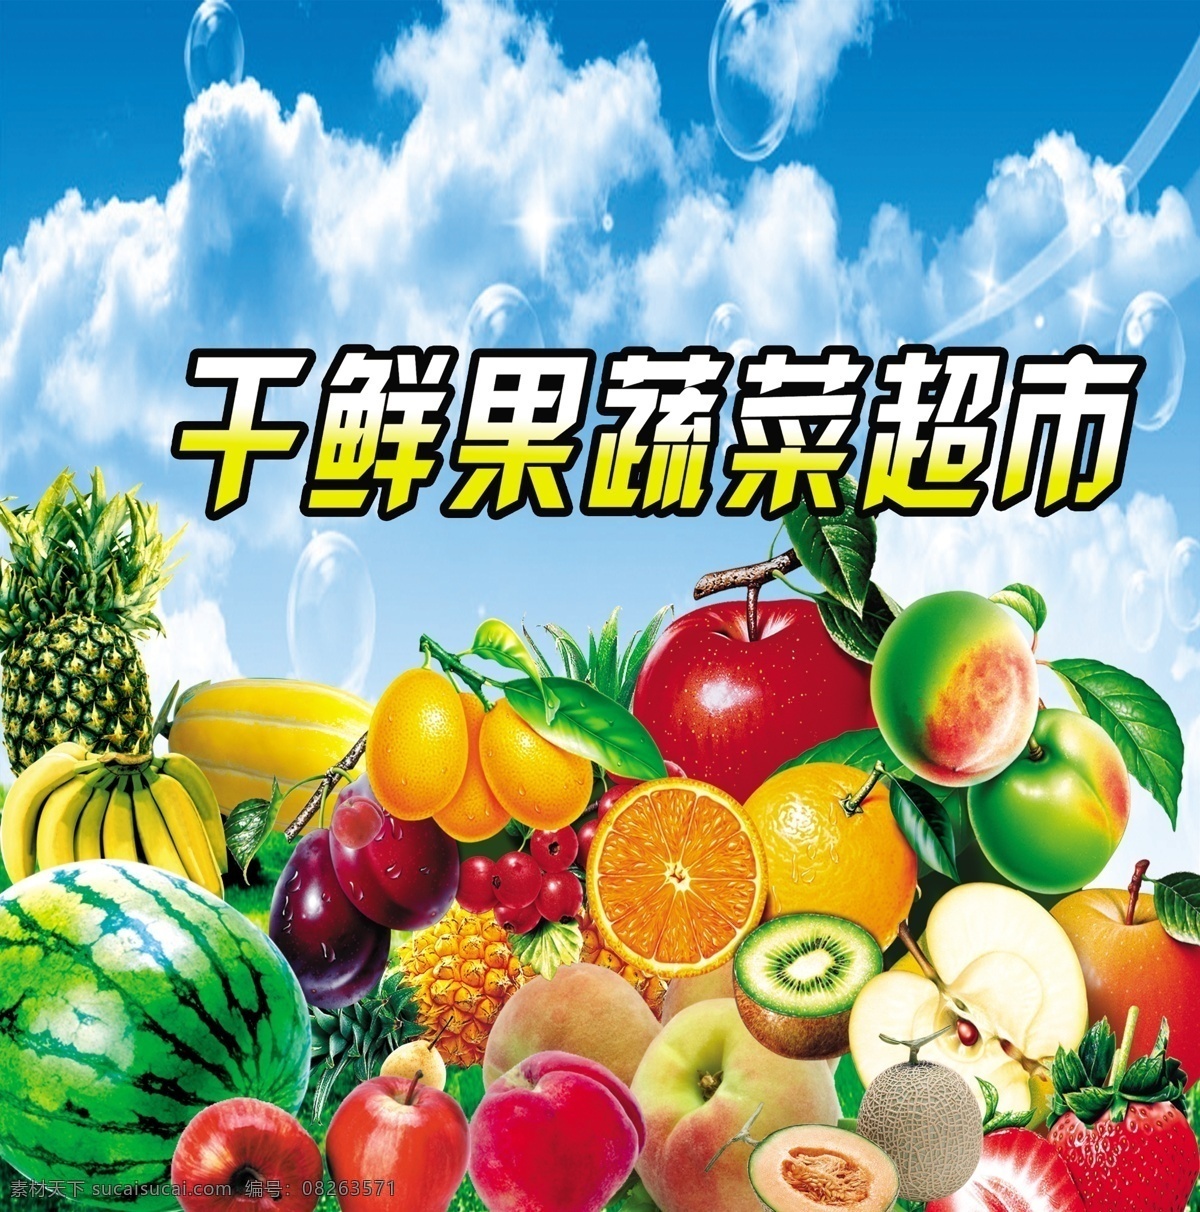 蔬菜 水果 超市 宣传 广告 中文字 西瓜 菠萝 苹果 草莓 蓝天 白云 国内广告设计 广告设计模板 源文件